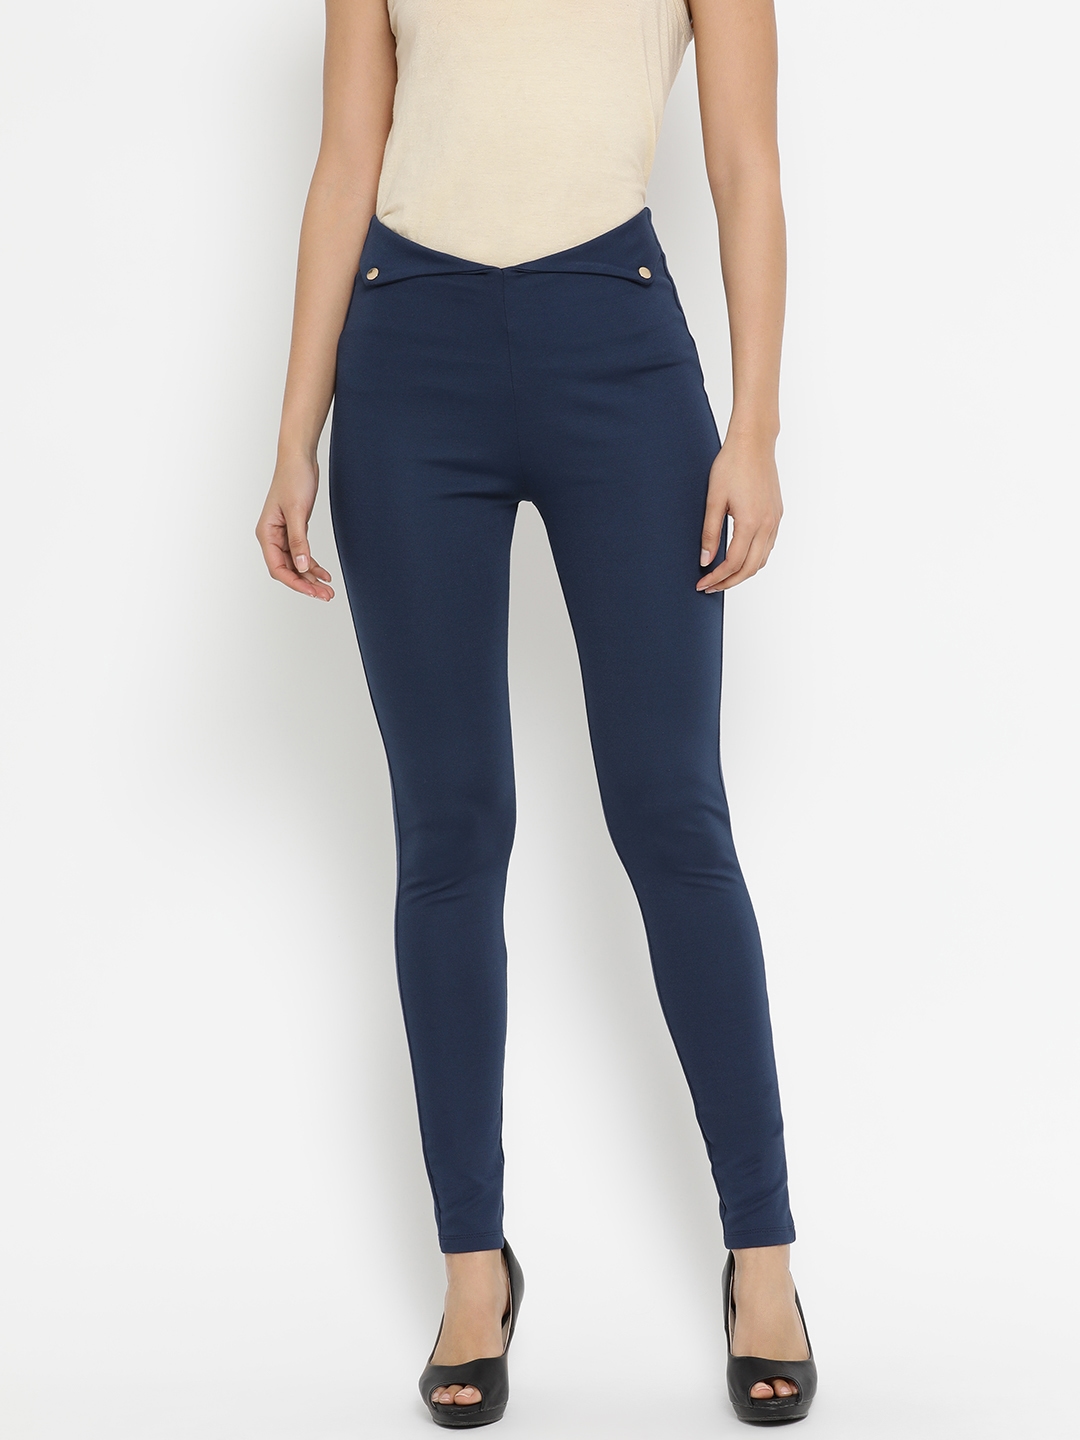 Buy Kazo Women Navy Blue Skinny Fit Jeggings - Jeggings for Women 8598231